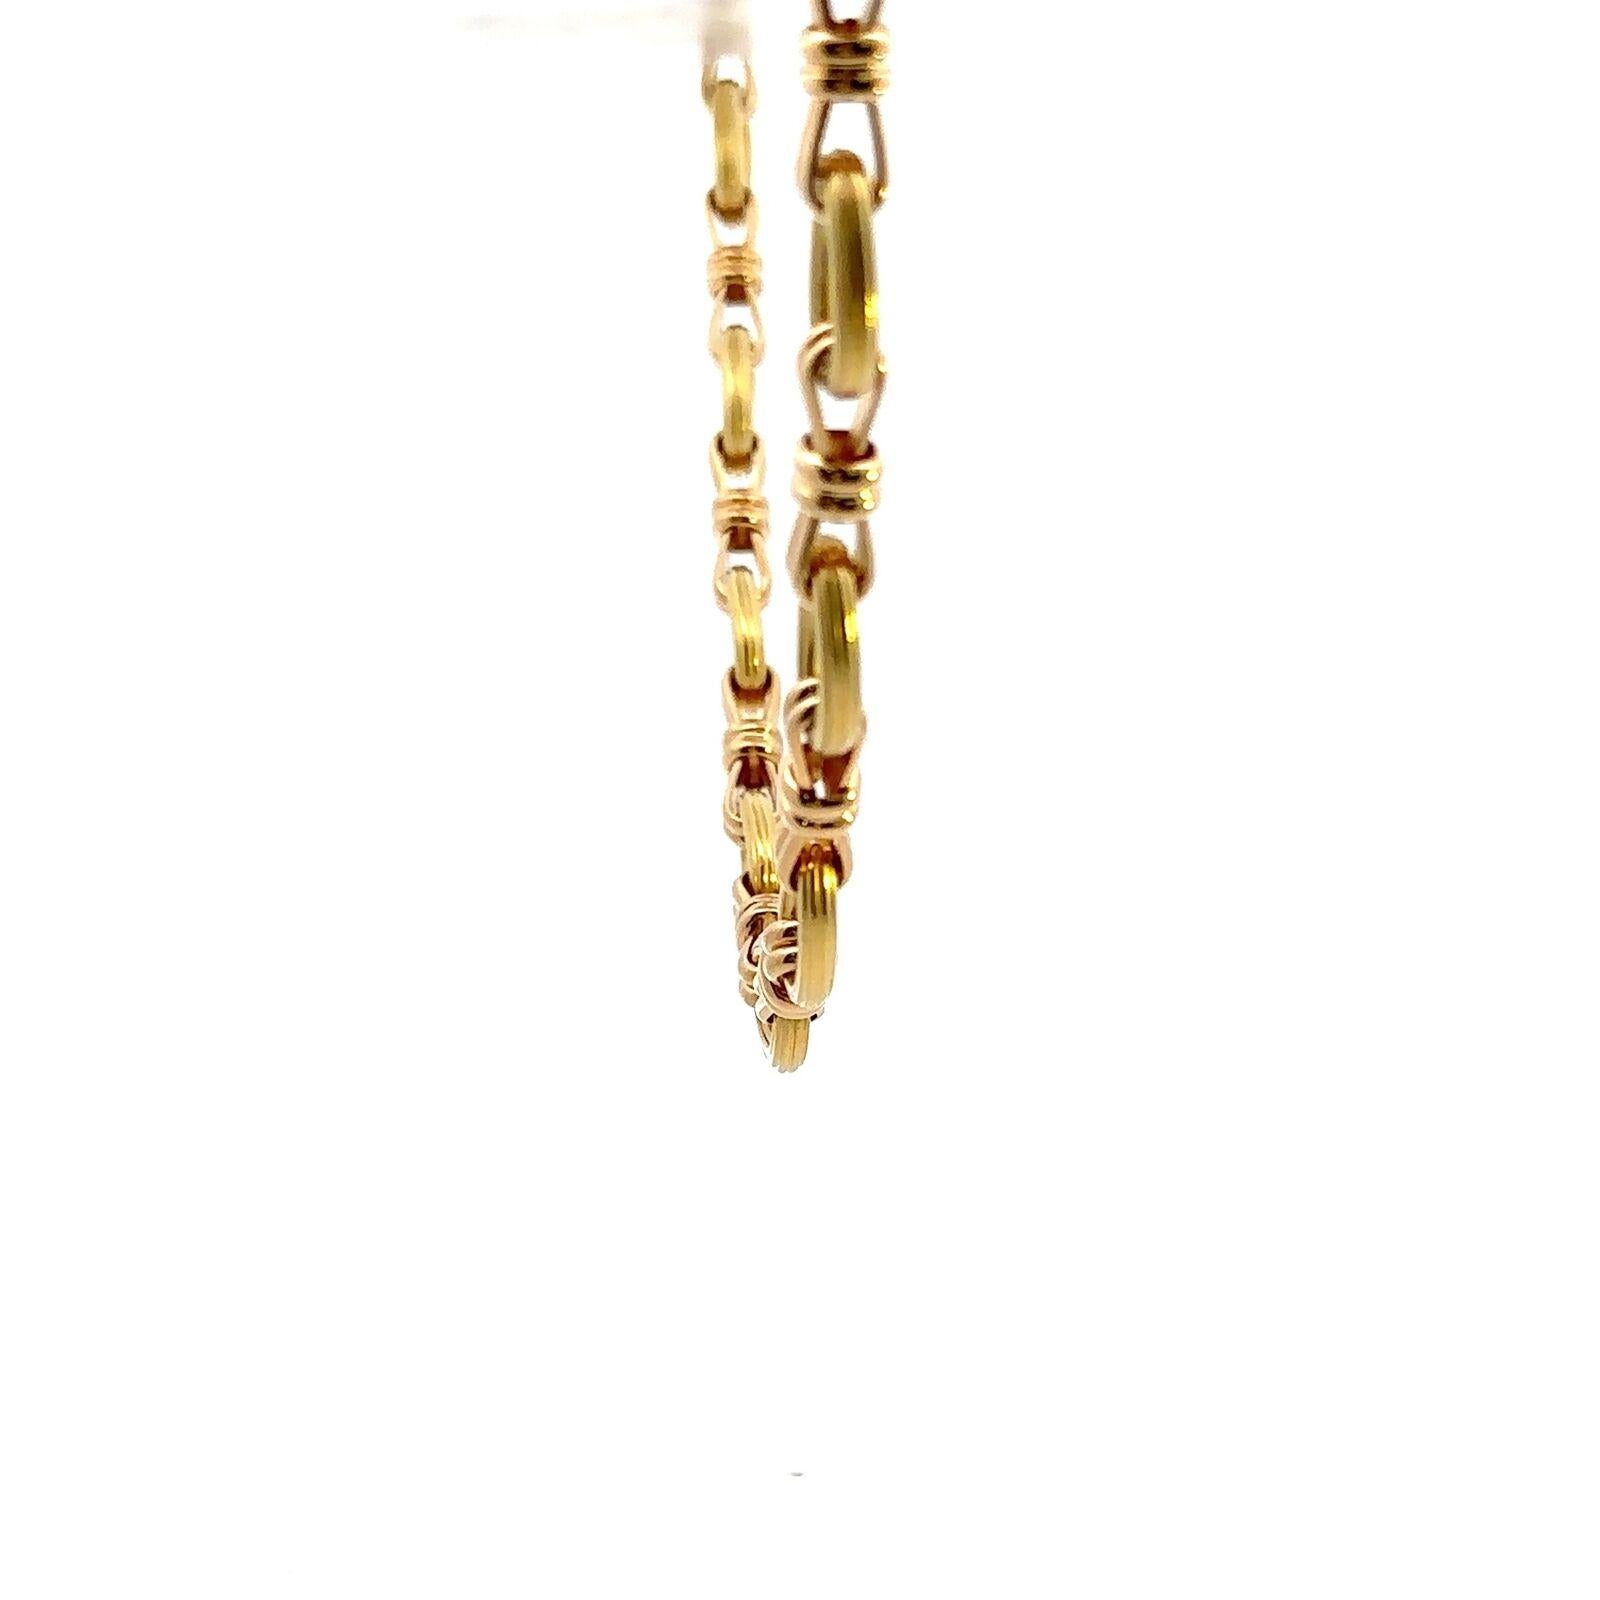 Chaumet Paris 18k Gelbgold Link Halskette Vintage CIRCA 1970s

Hier haben Sie die Chance, eine wunderschöne Designer-Halskette mit hohem Sammlerwert zu erwerben.  

Die Halskette besteht aus Kreisen und Gliedern, ein ikonischer Look aus den 1970er